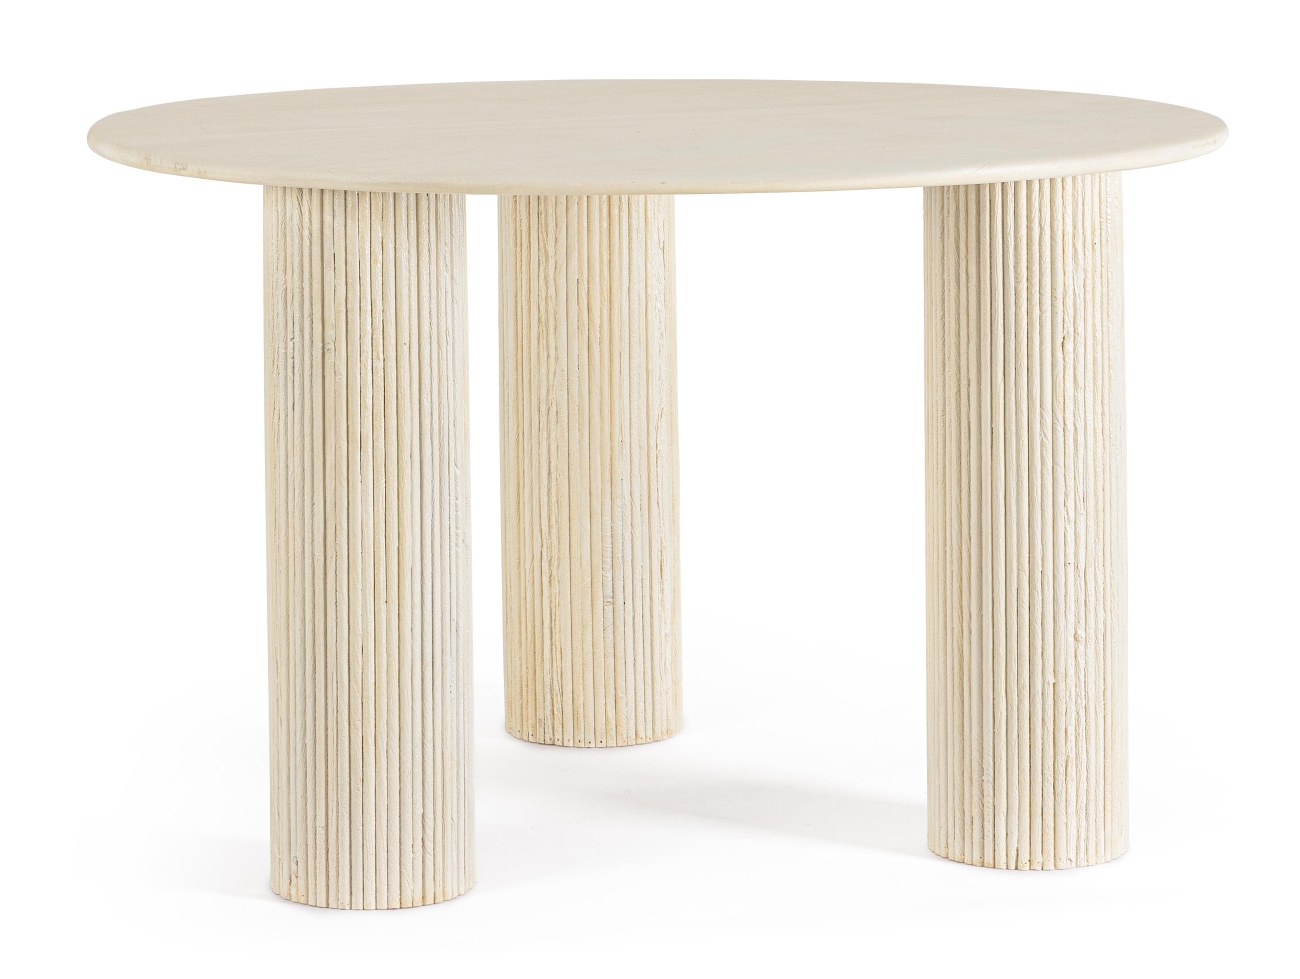 Der Esstisch Dacca überzeugt mit seinem modernen Stil. Gefertigt wurde er aus Mangoholz, welches einen creme Farbton besitzt. Das Gestell ist auch aus Mangoholz und hat eine creme Farbe. Der Tisch besitzt einen Durchmesser von 120 cm